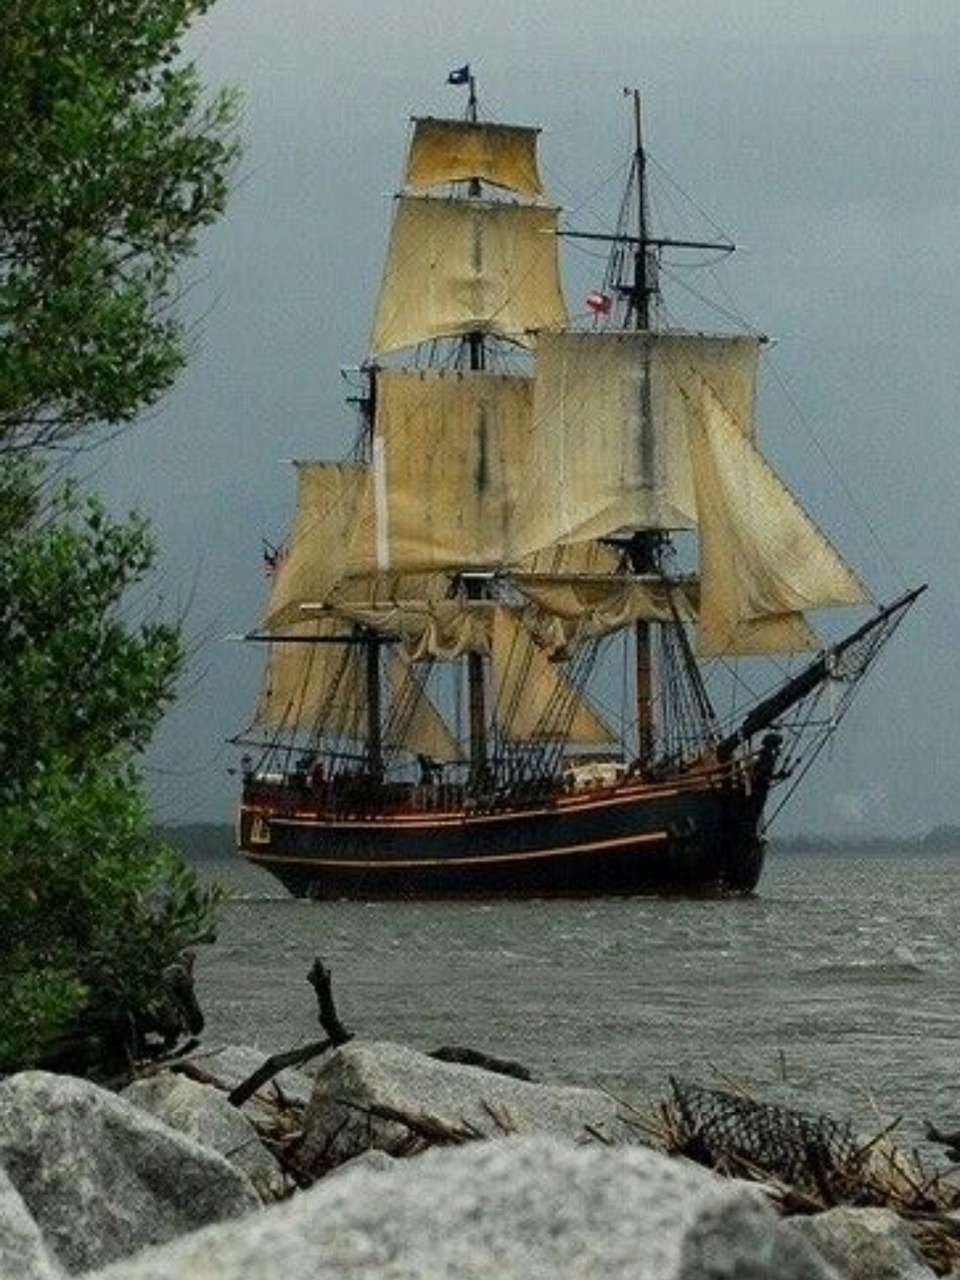 mauregatos:

Ship and sails.